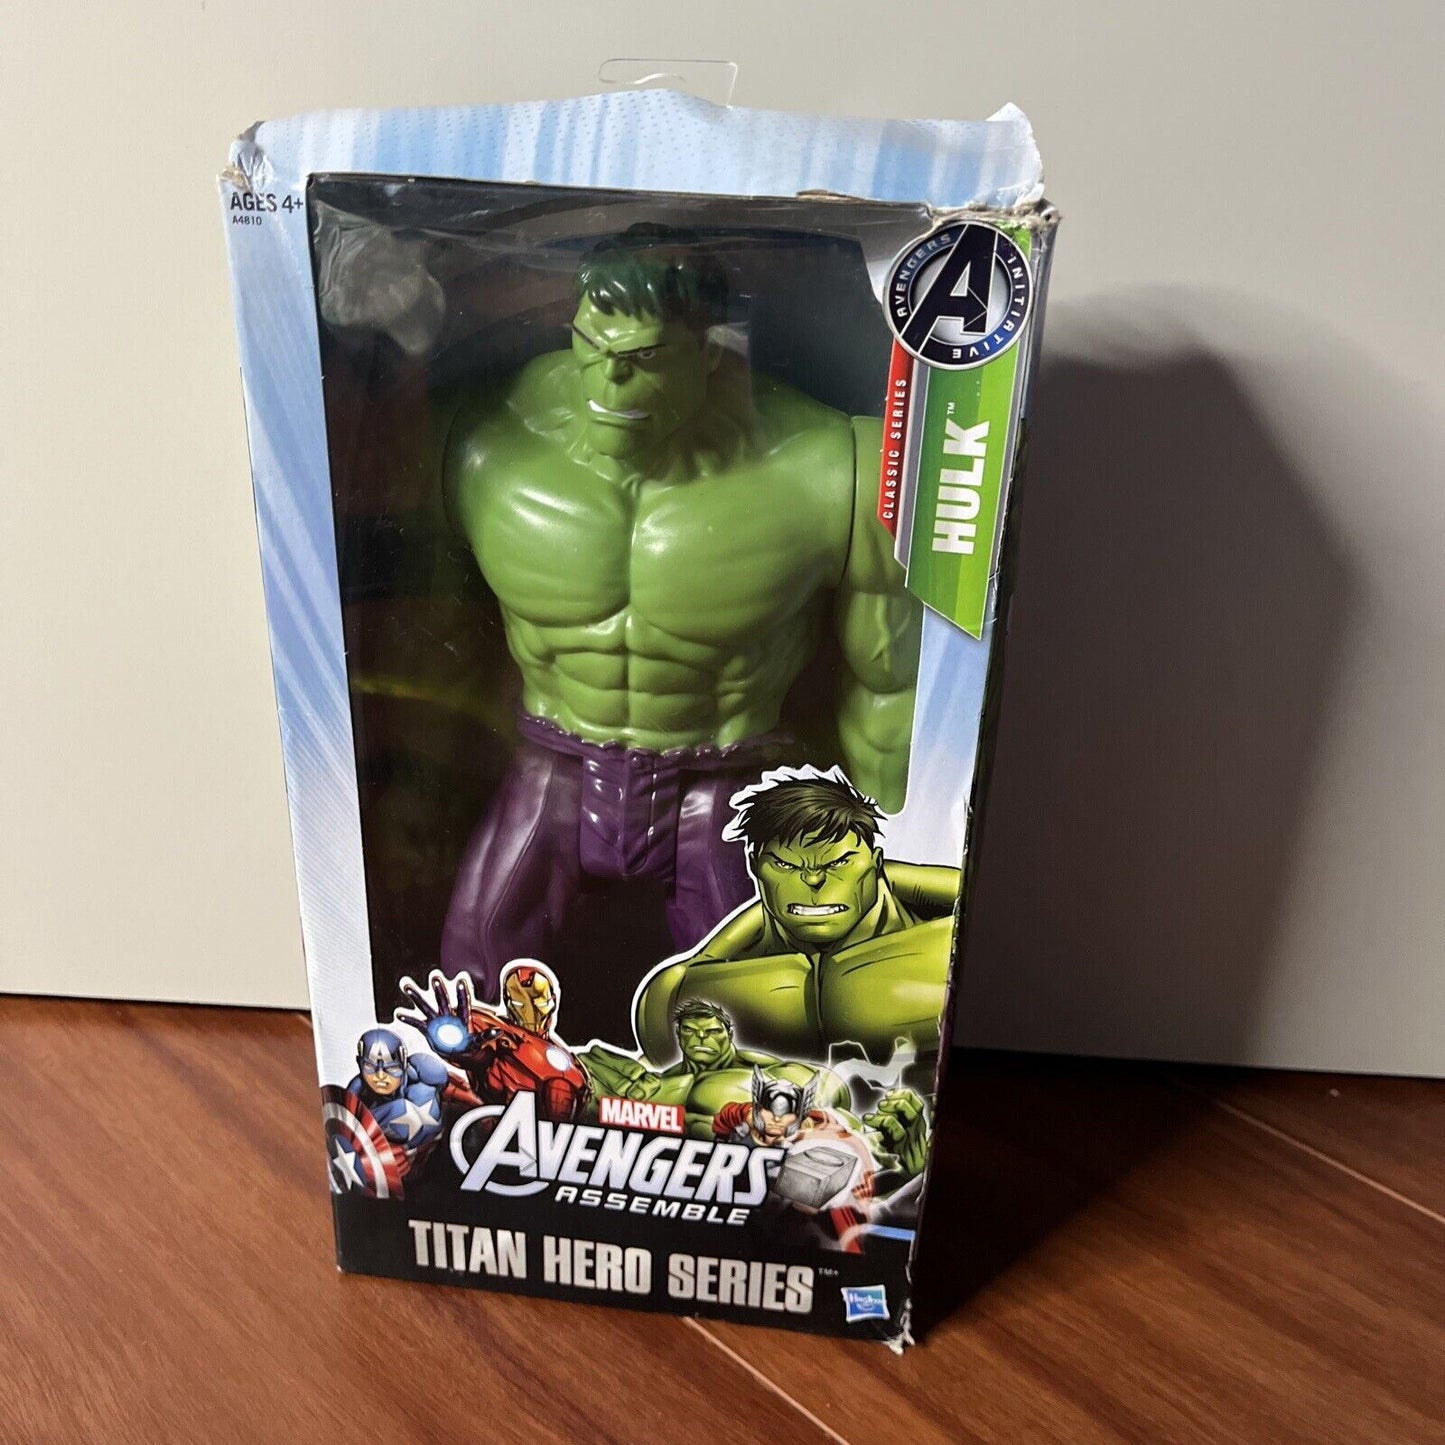 26cm Marvel Avengers Hulk Action Figures